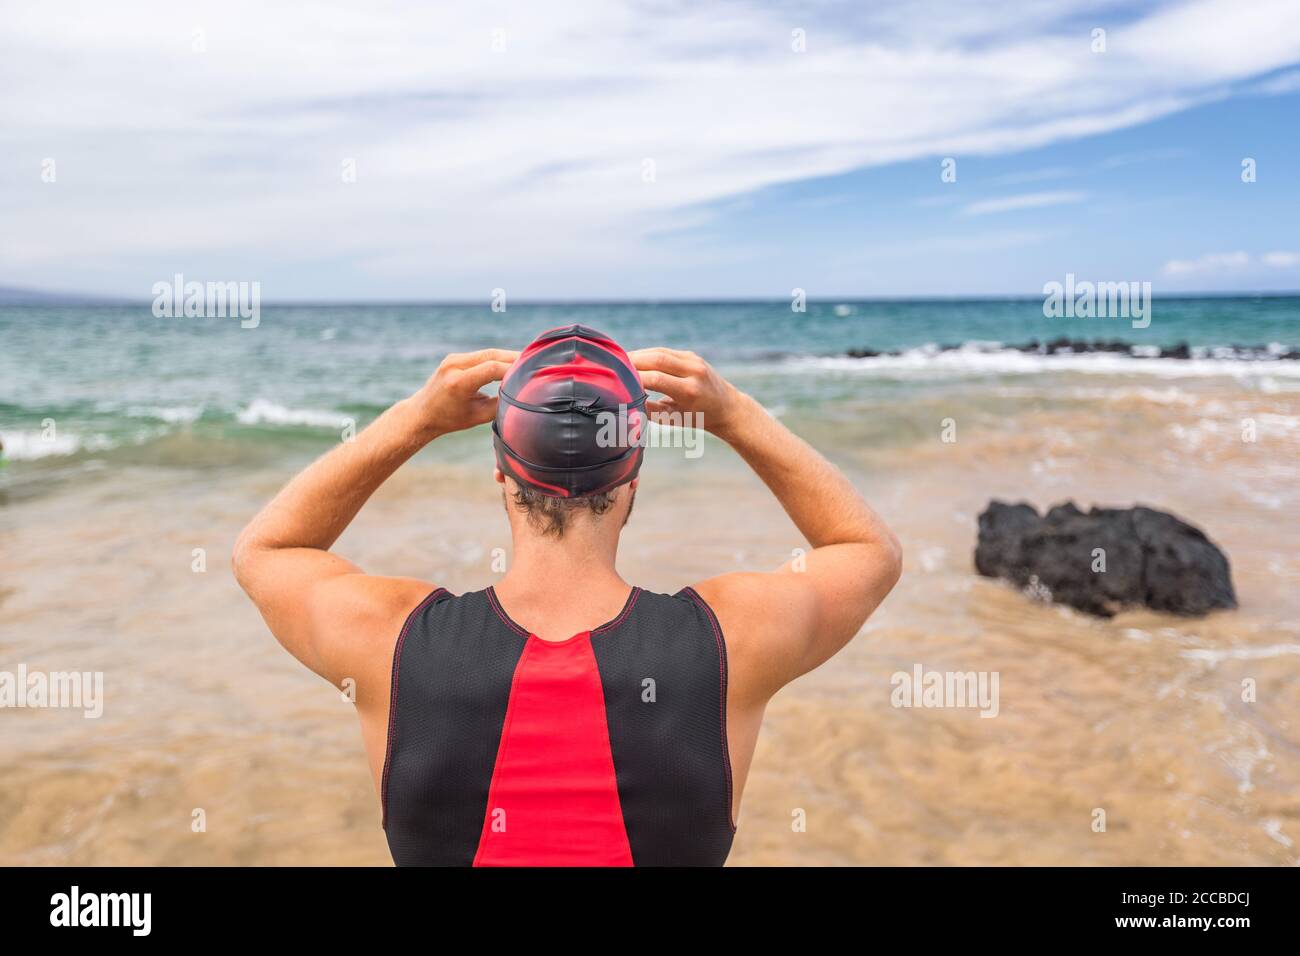 Nuotatore di Triathlon che va nuotando pronto per nuotare guardando l'orizzonte dell'oceano. Uomo triatleta nuotatore indossare occhiali per la concorrenza. Atleta professionista Foto Stock